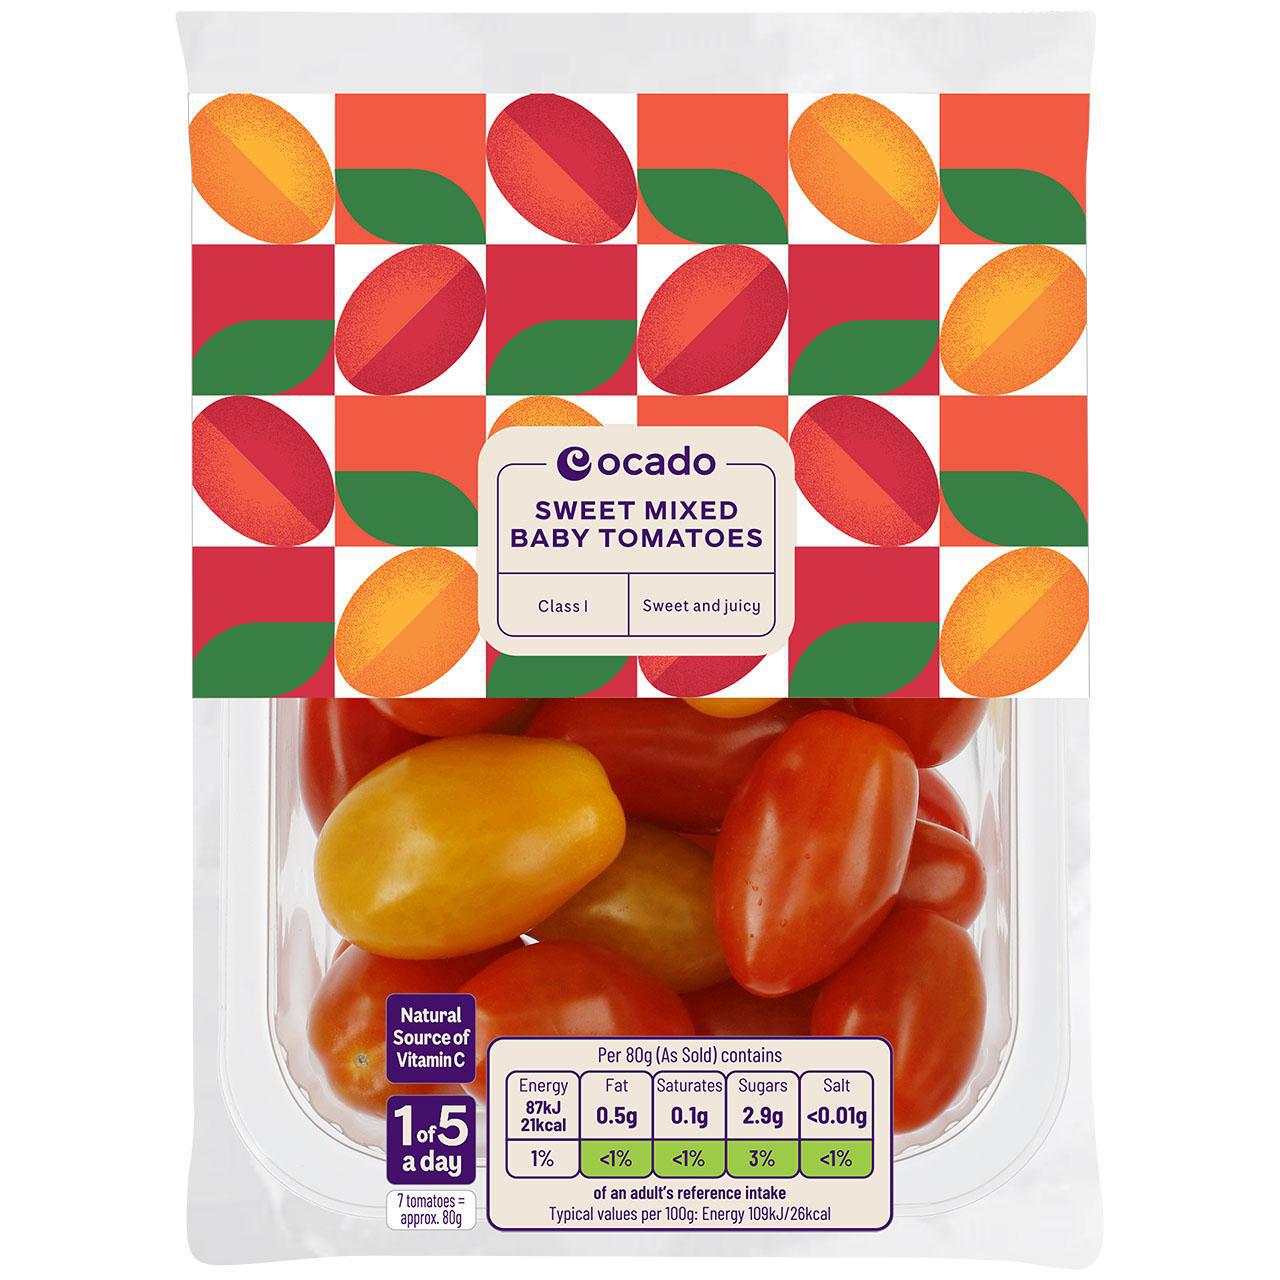 Ocado Sweet Mixed Baby Tomatoes 250g